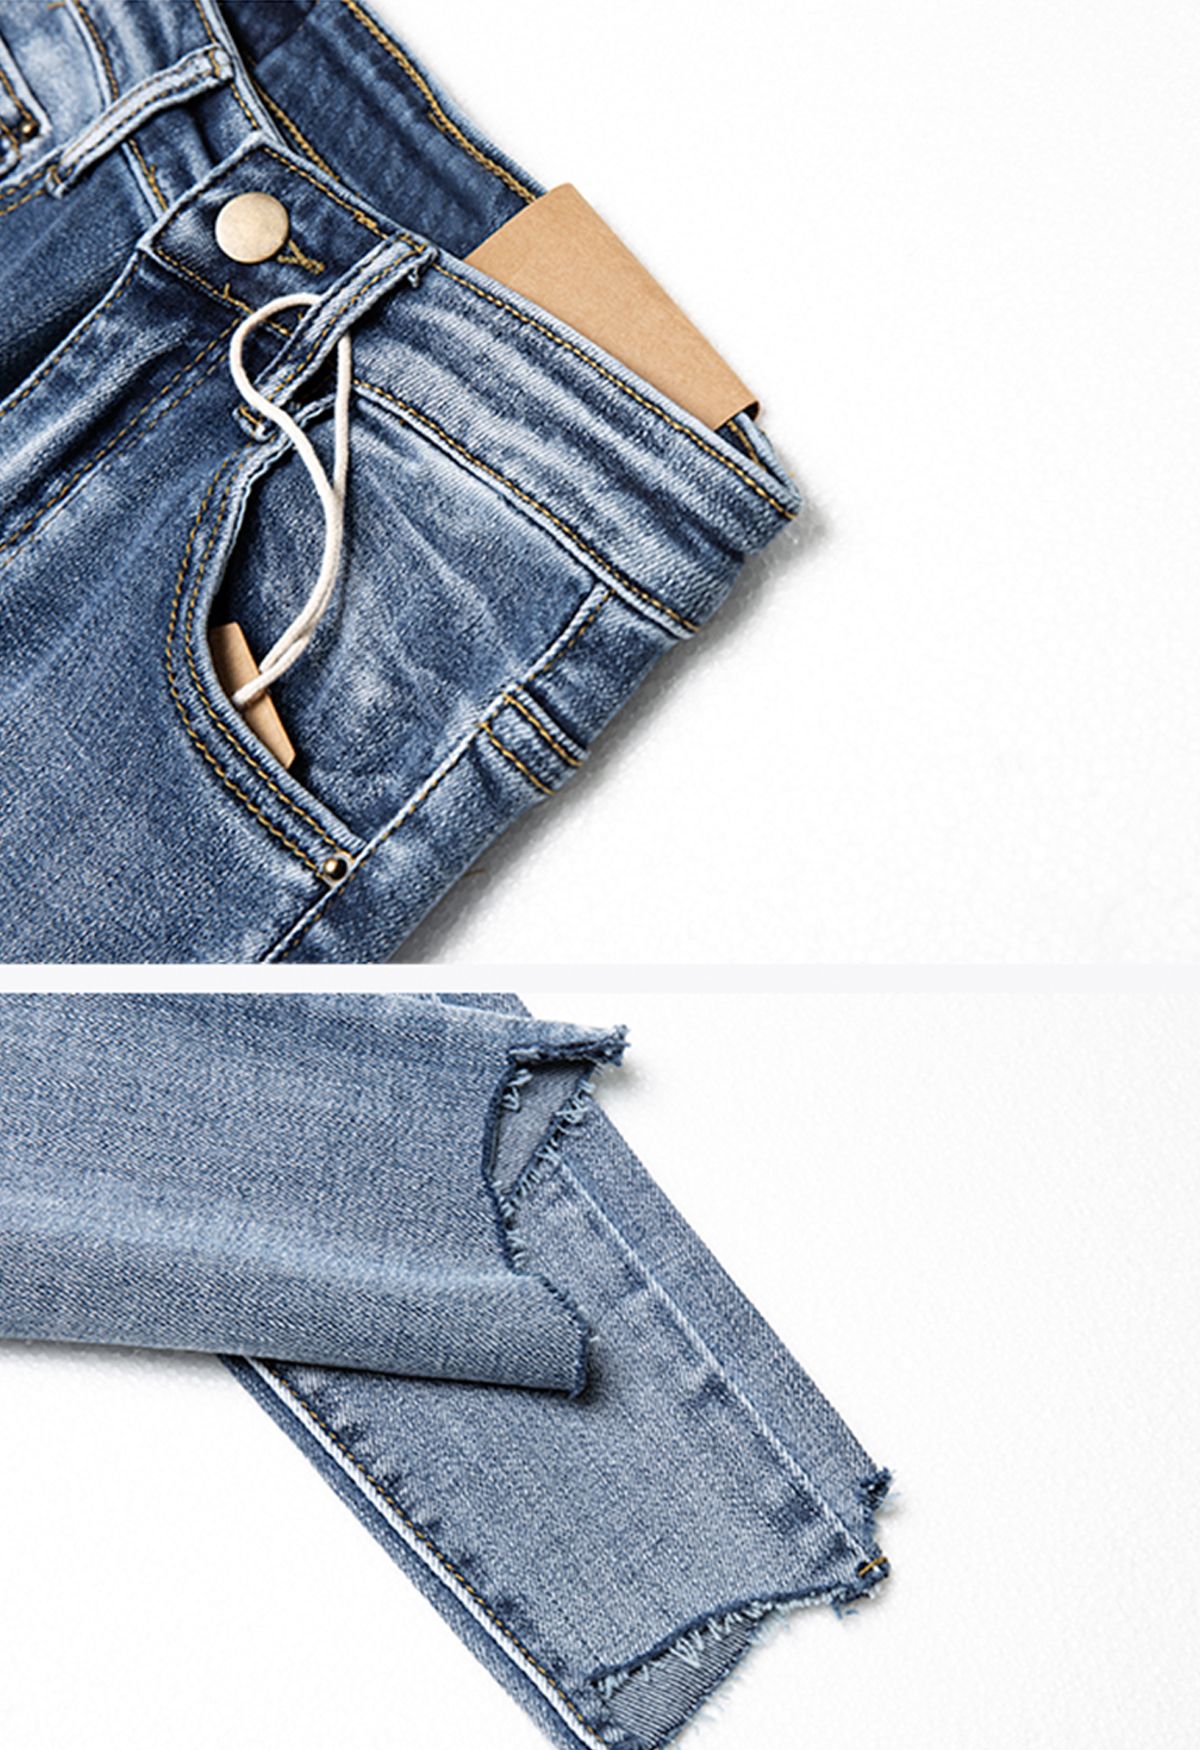 Calça jeans cropped com bainha irregular irregular